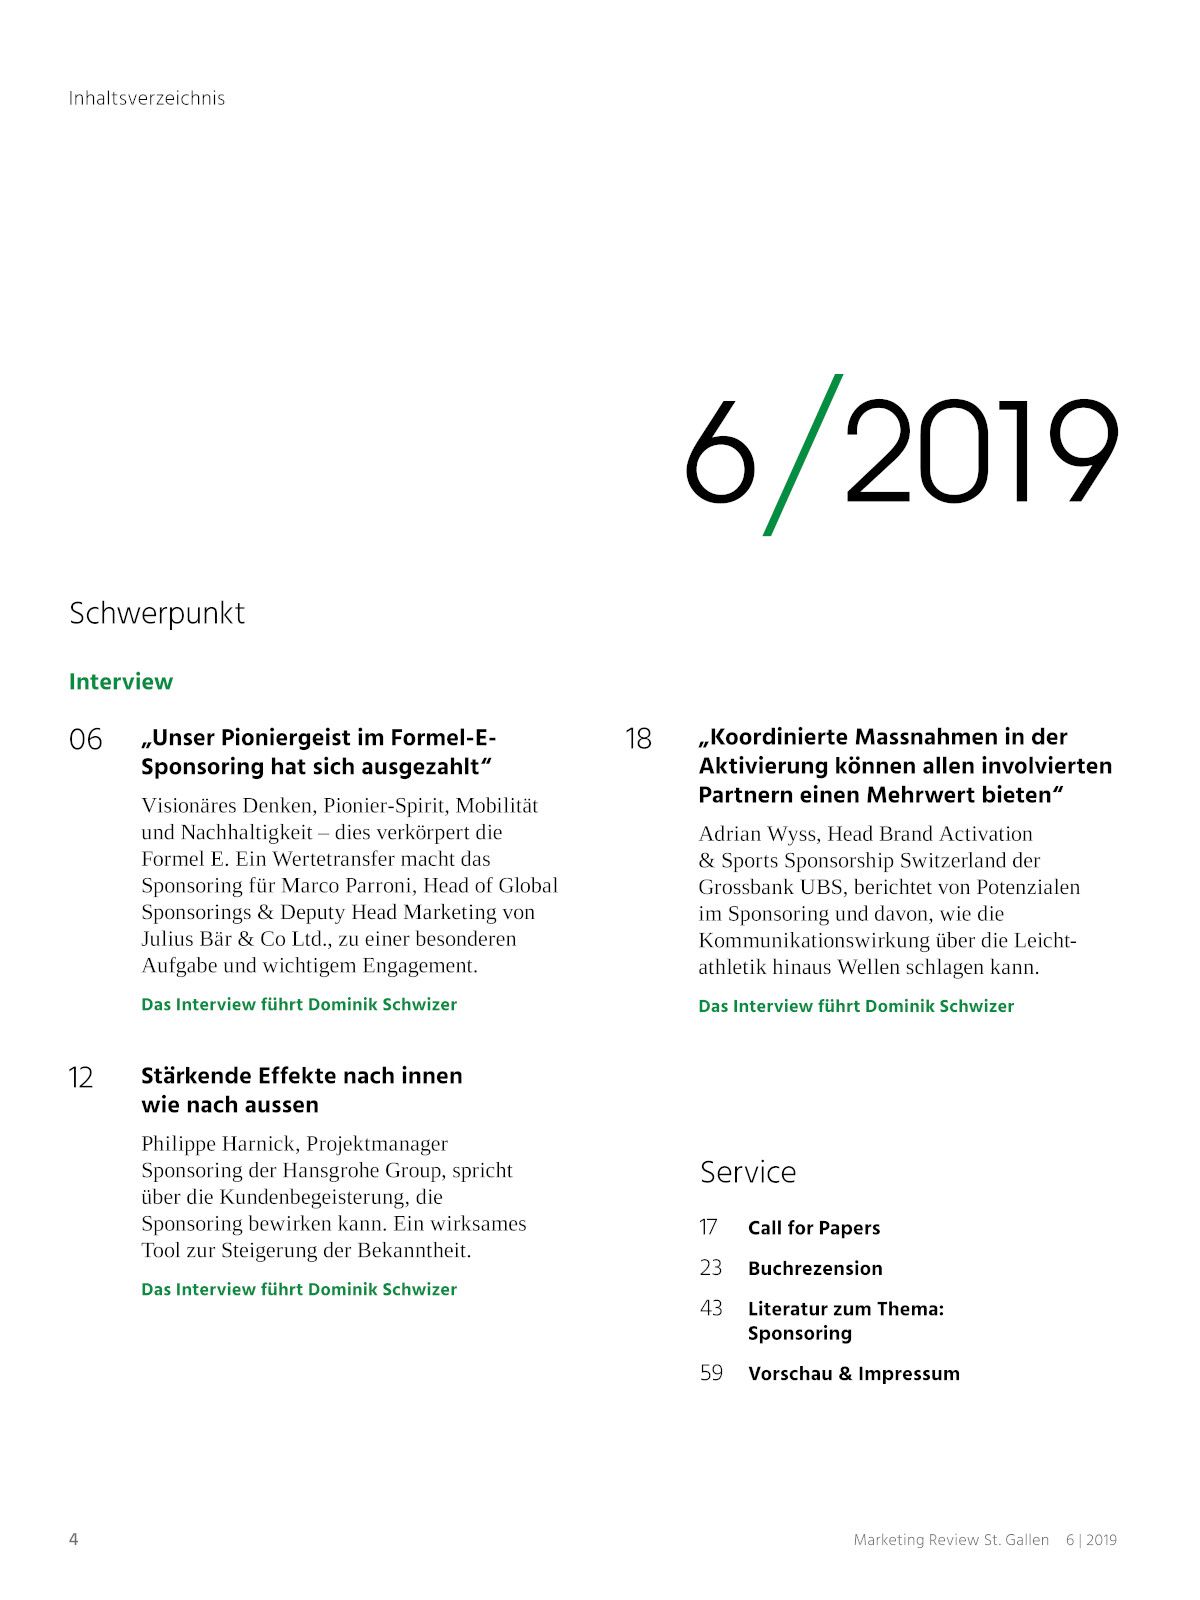 Marketing Review 6-2019 Inhaltsverzeichnis